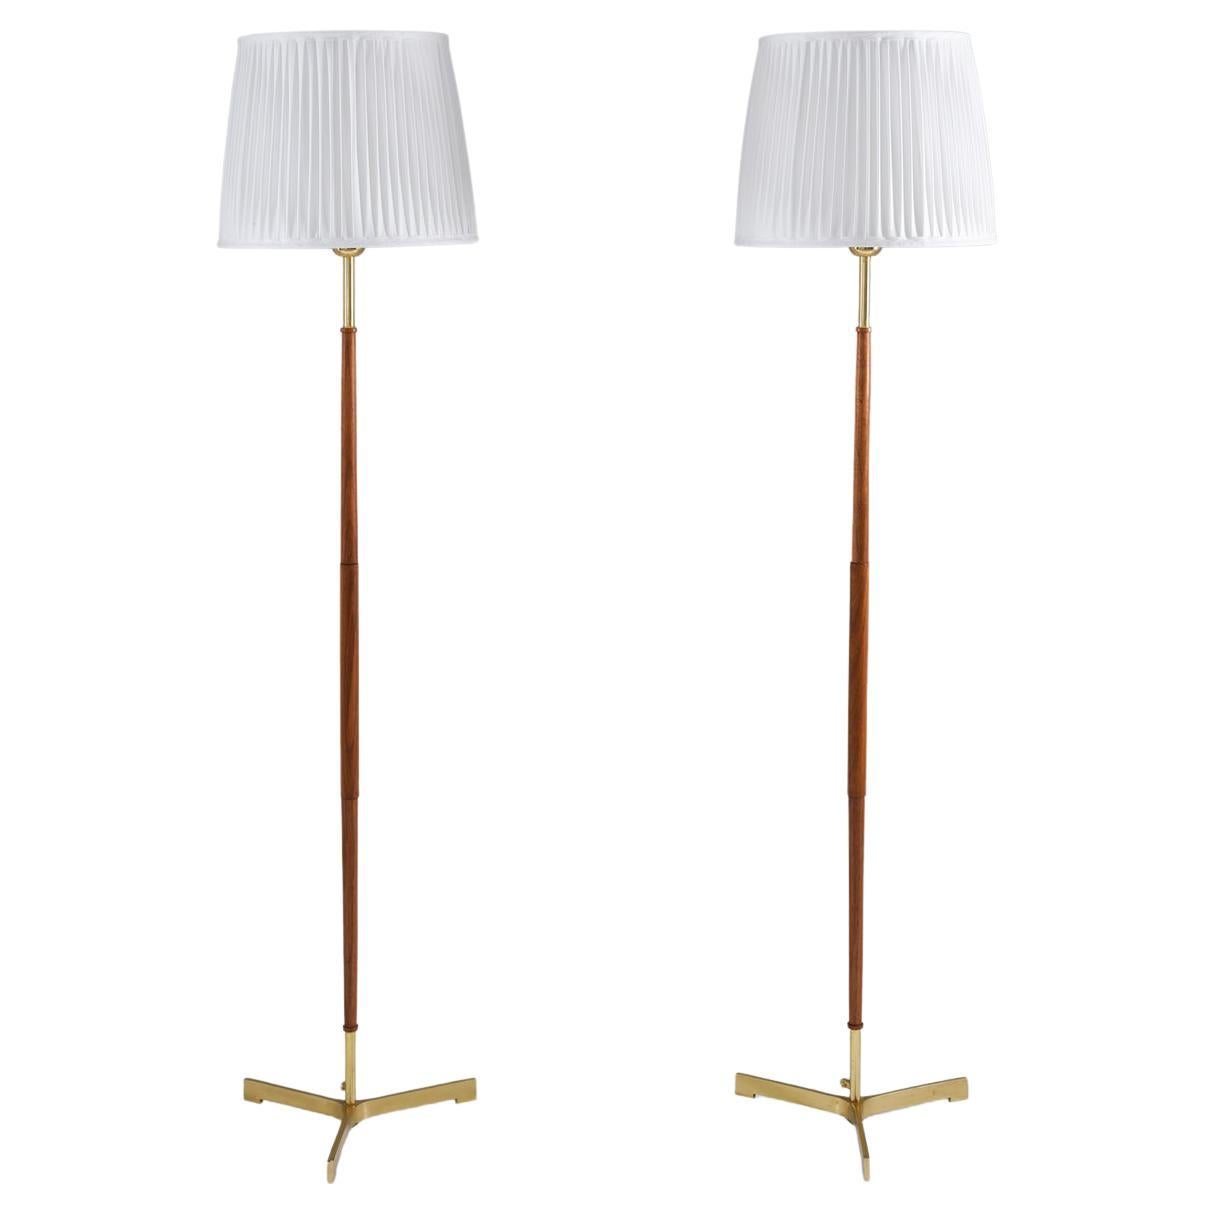 Scandinavian Midcentury Floor Lamps in Brass and Wood